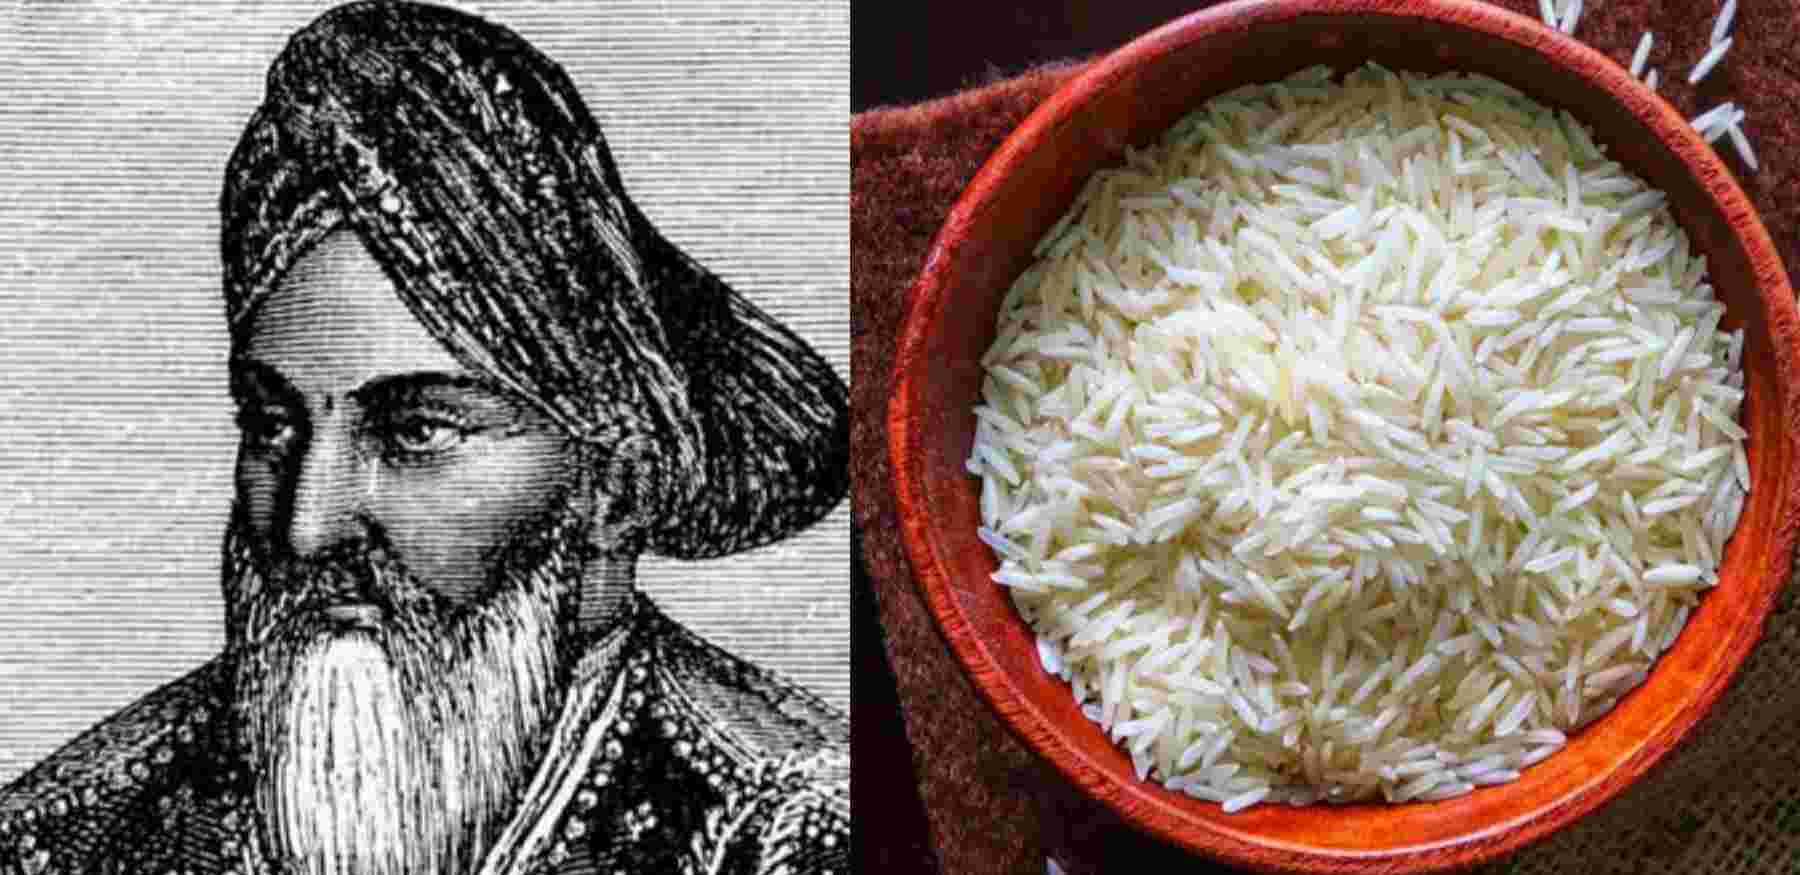 Dehradun basmati rice